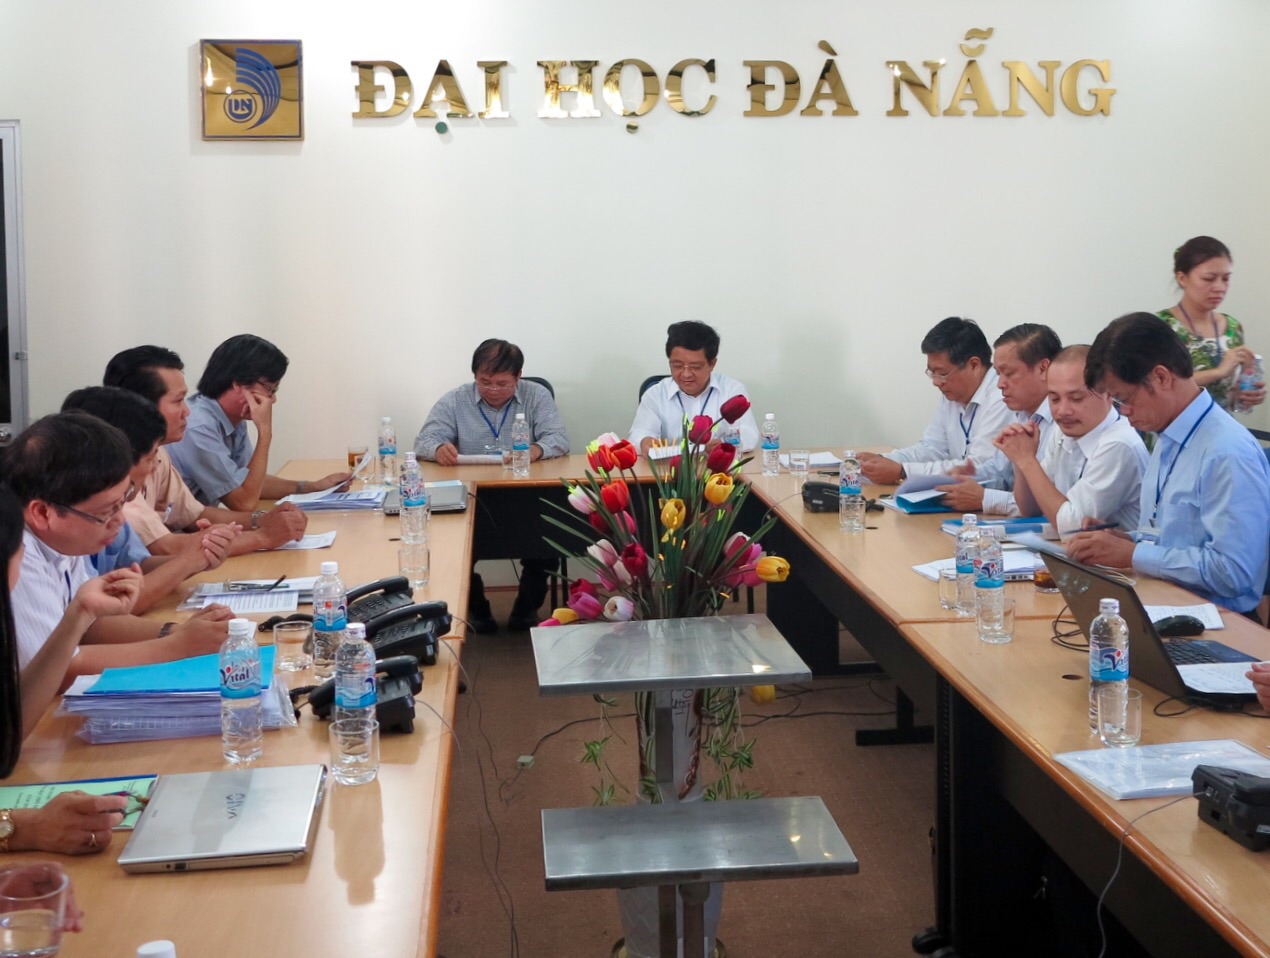 Thứ trưởng Bộ GD&ĐT Bùi Văn Ga tại buổi buổi làm việc với Ban chỉ đạo cụm thi 27 kỳ thi THPT quốc gia 2015 trưa 4-7.